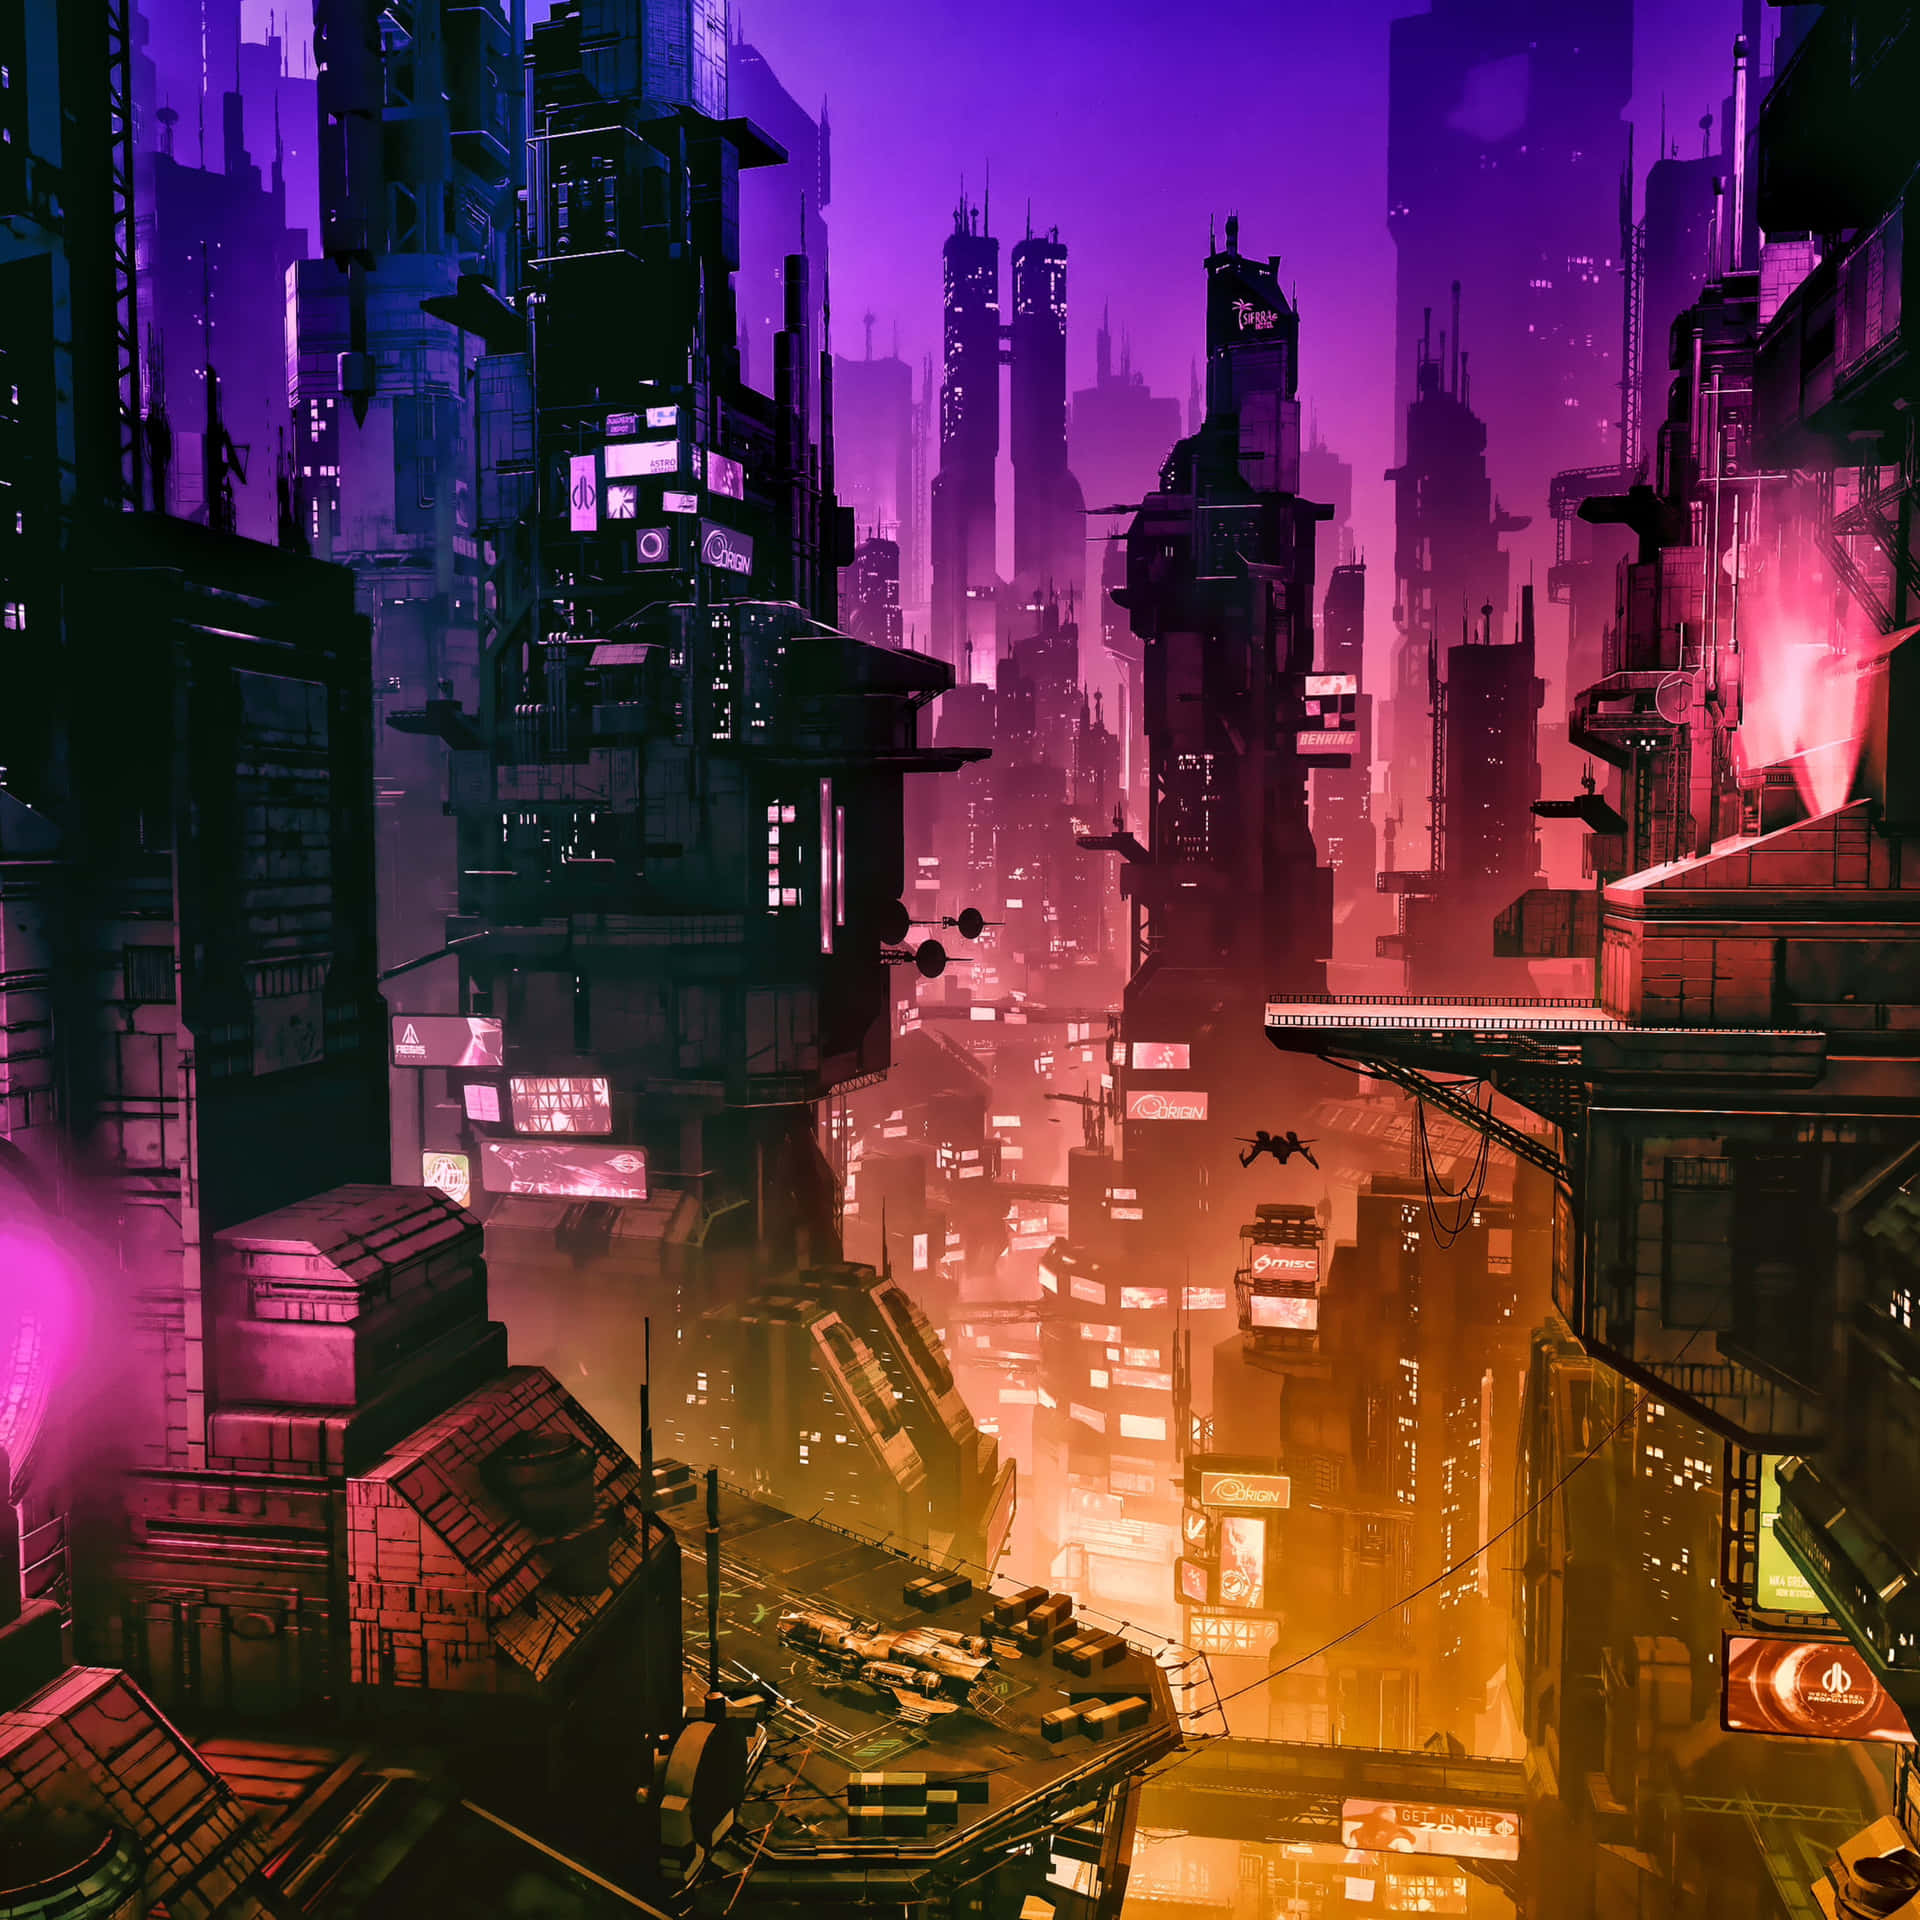 The Fantasy of Futuristic City